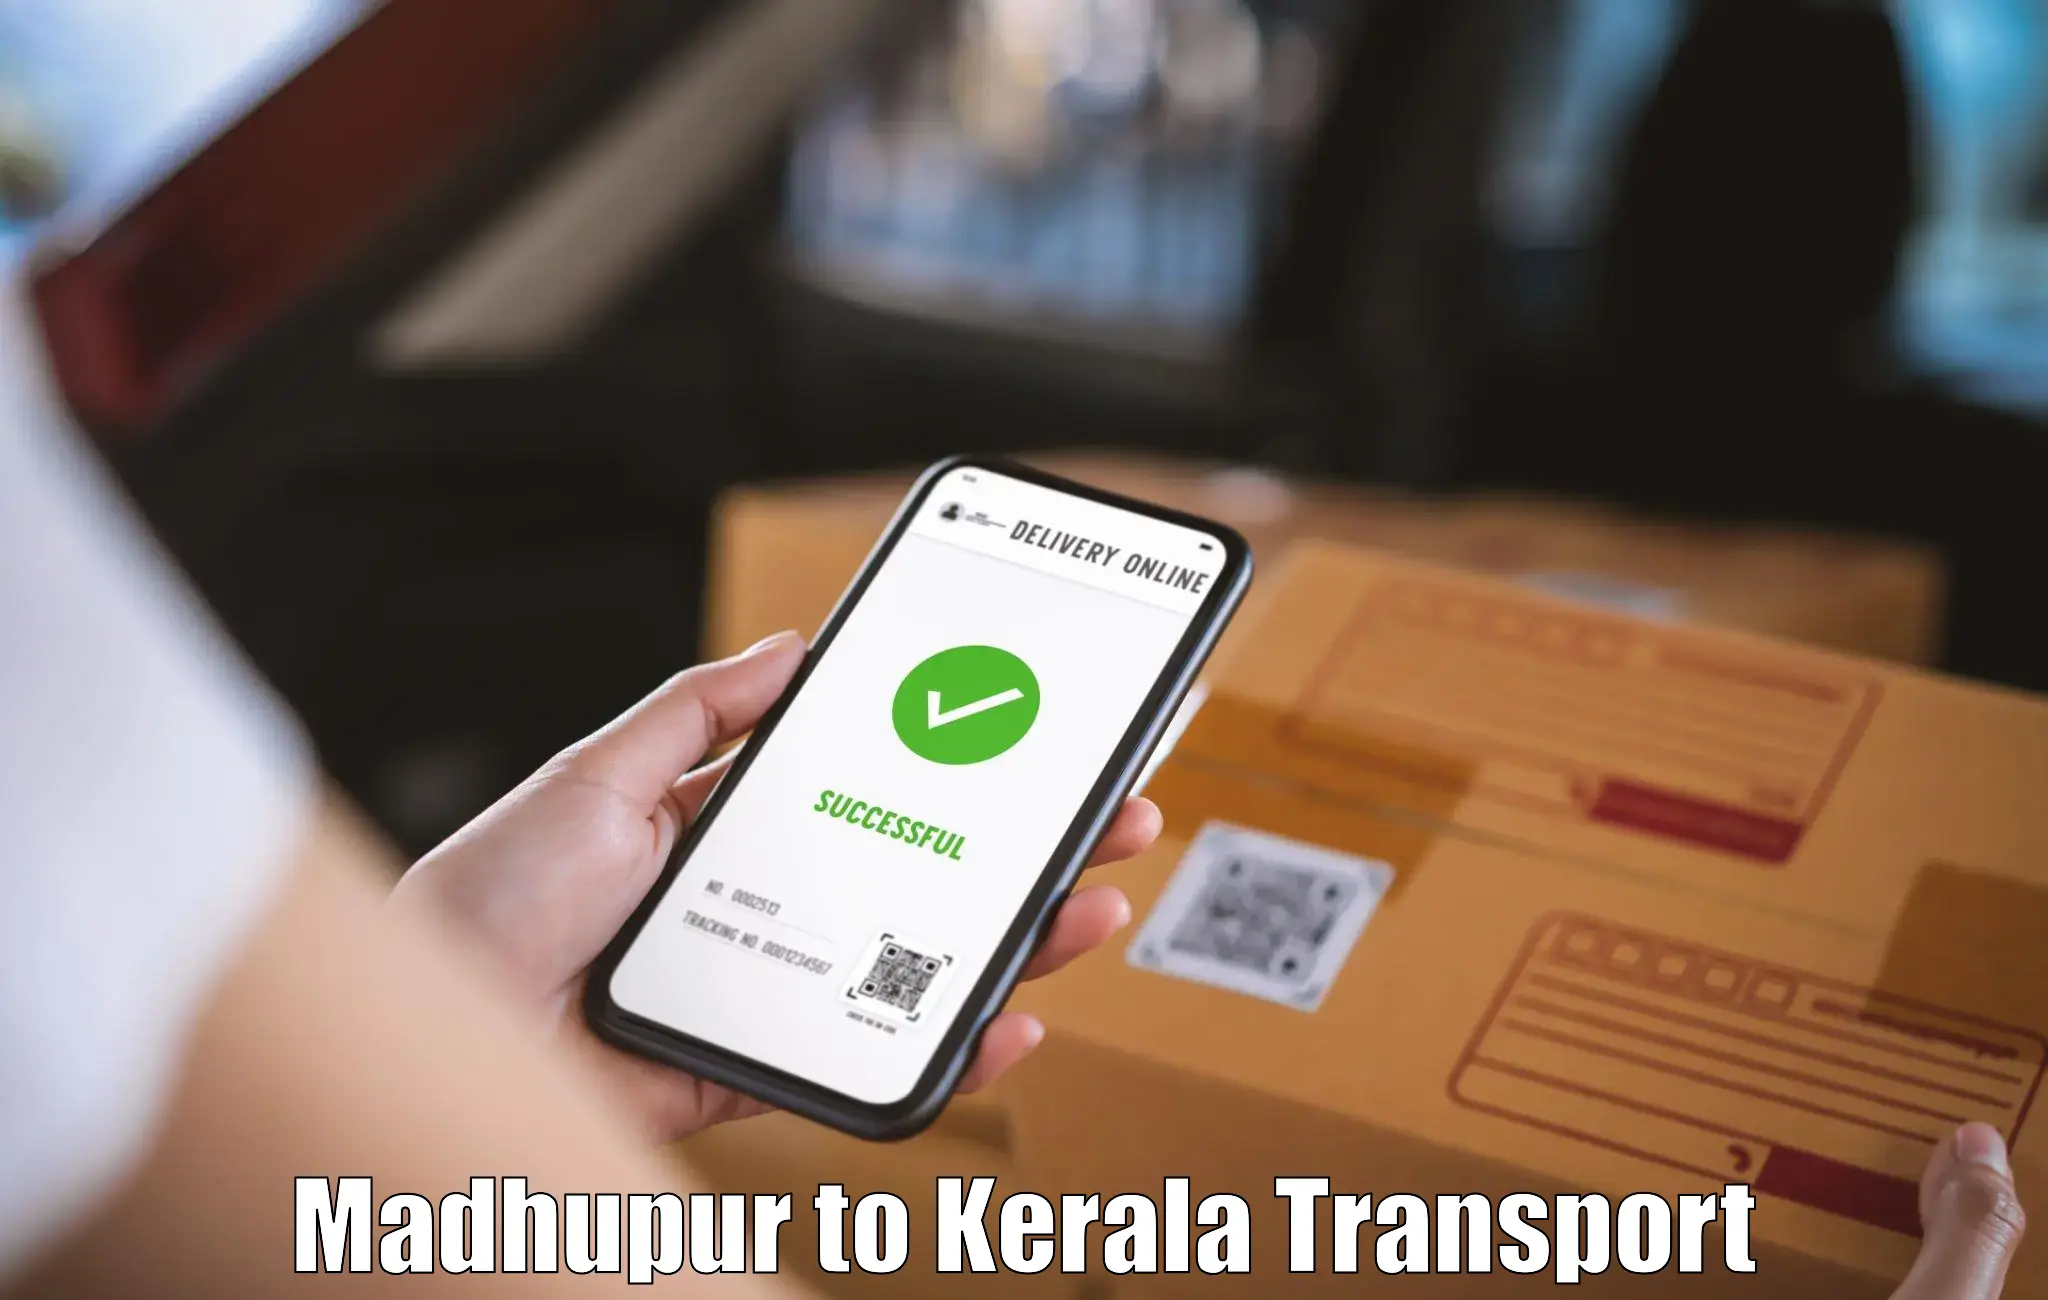 Shipping partner Madhupur to Kerala